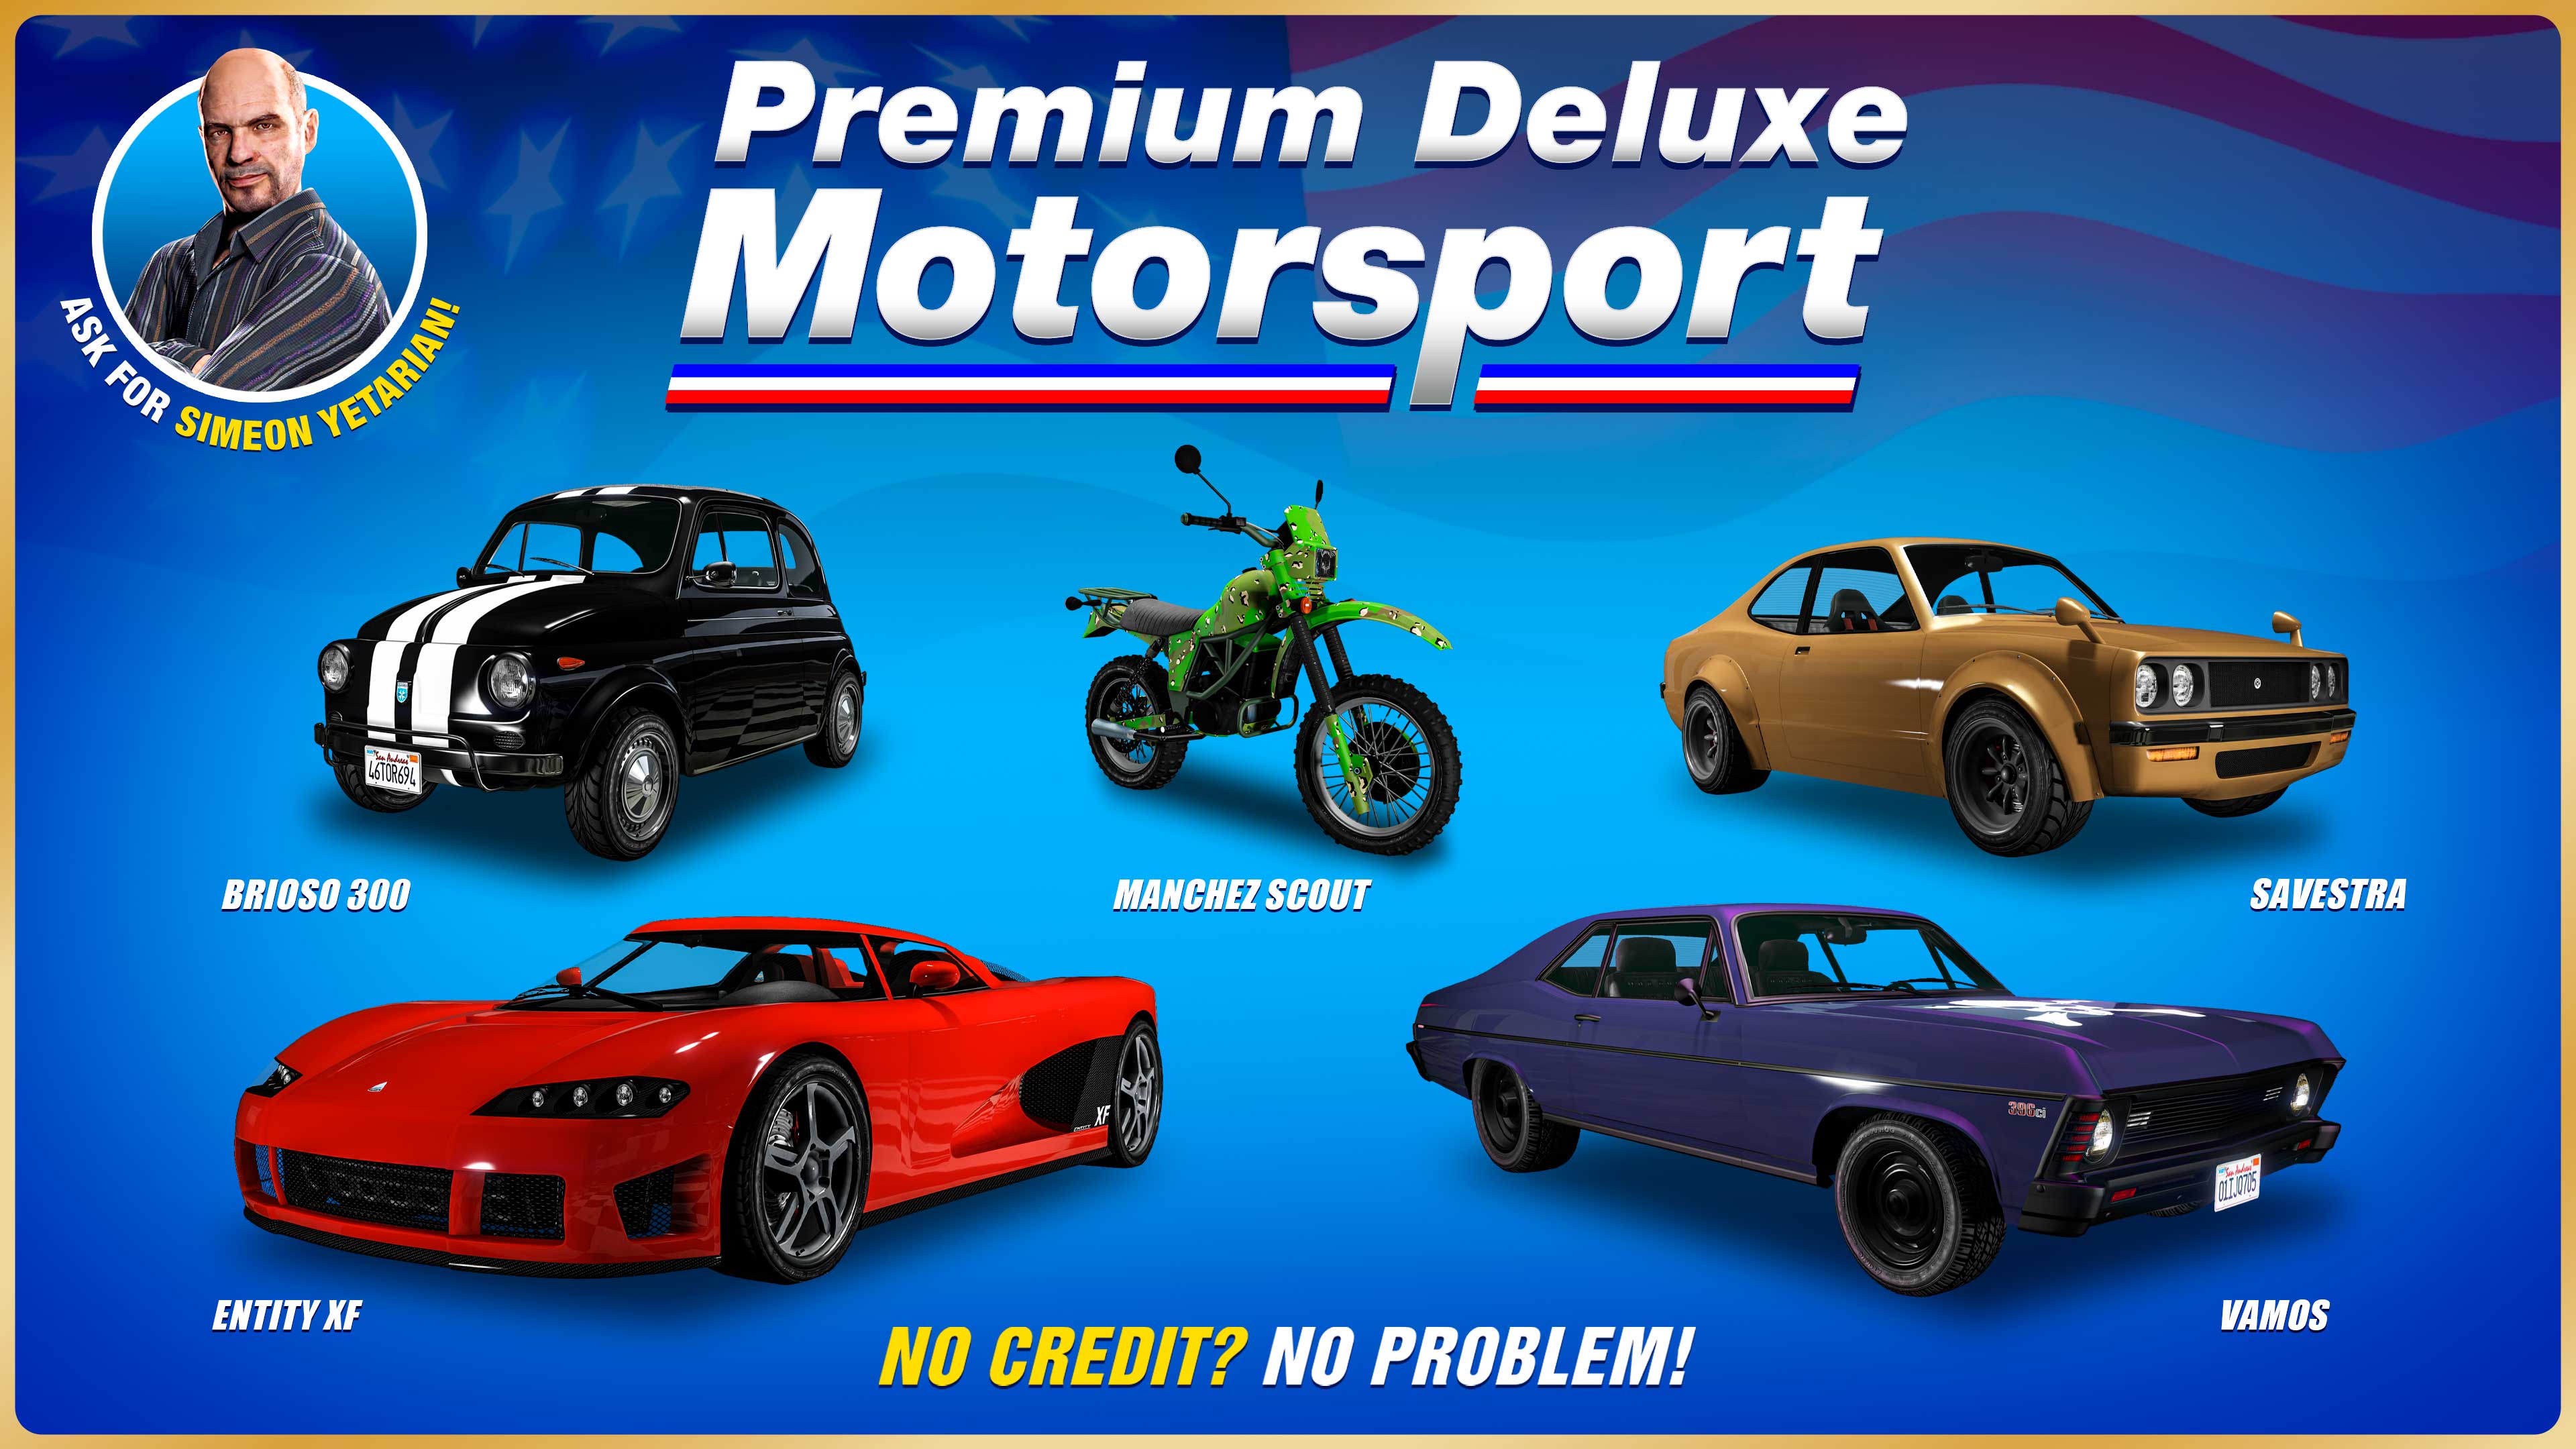 pôster da Premium Deluxe Motorsport